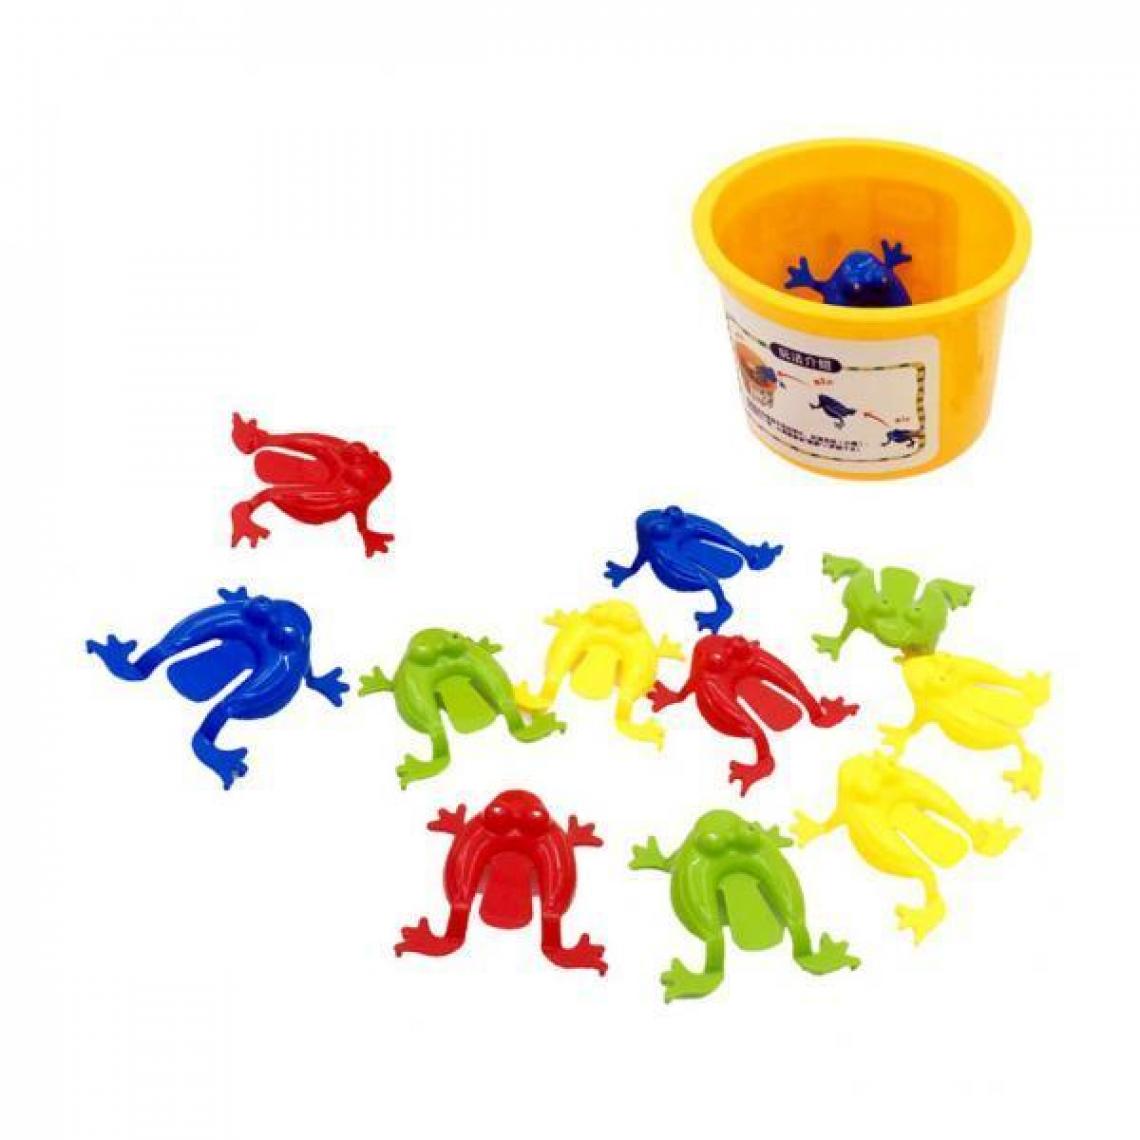 marque generique - grenouille plastique enfant Up Toy Party - Jeux éducatifs